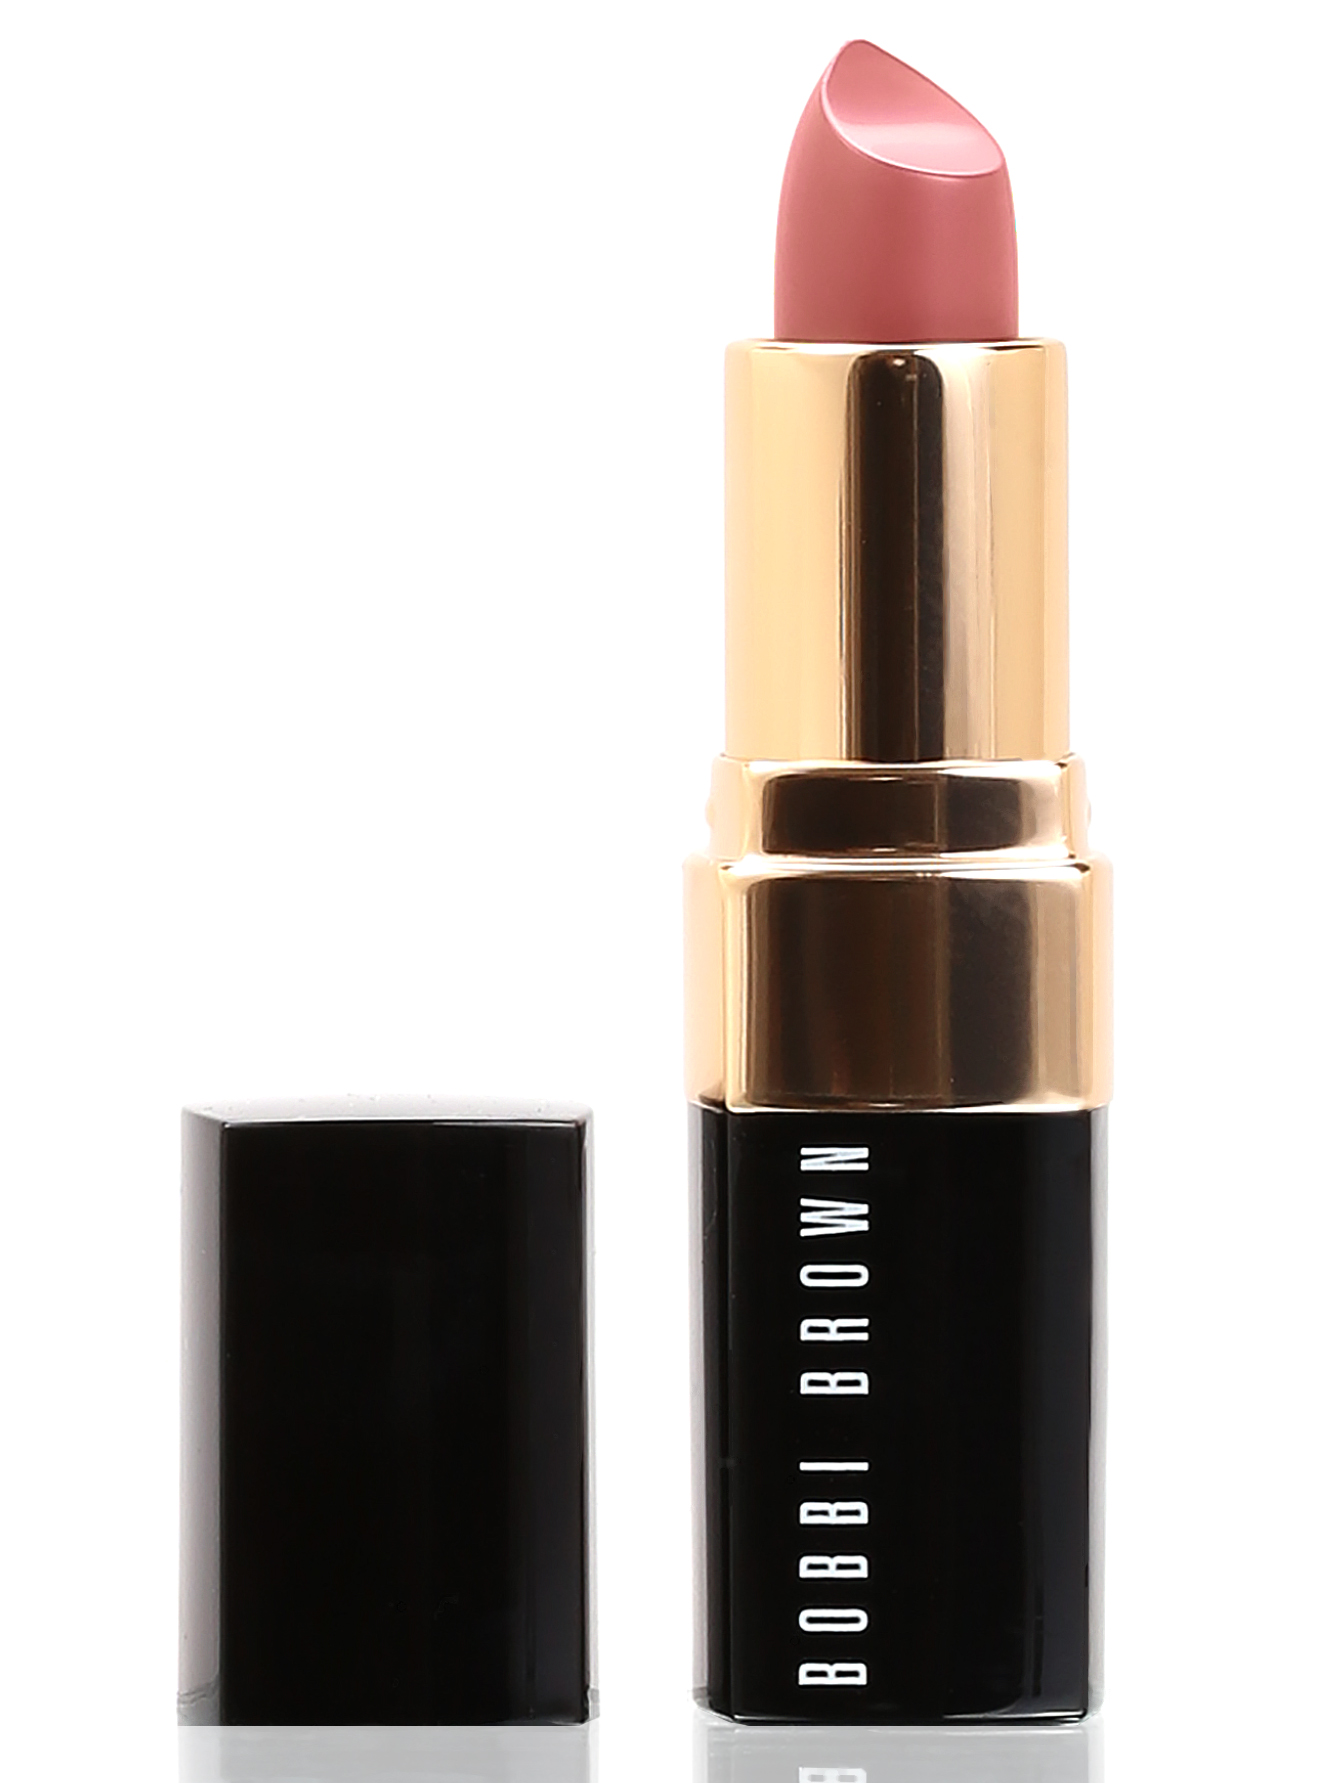 Помада - Sandwashed pink, Lipstick - Общий вид